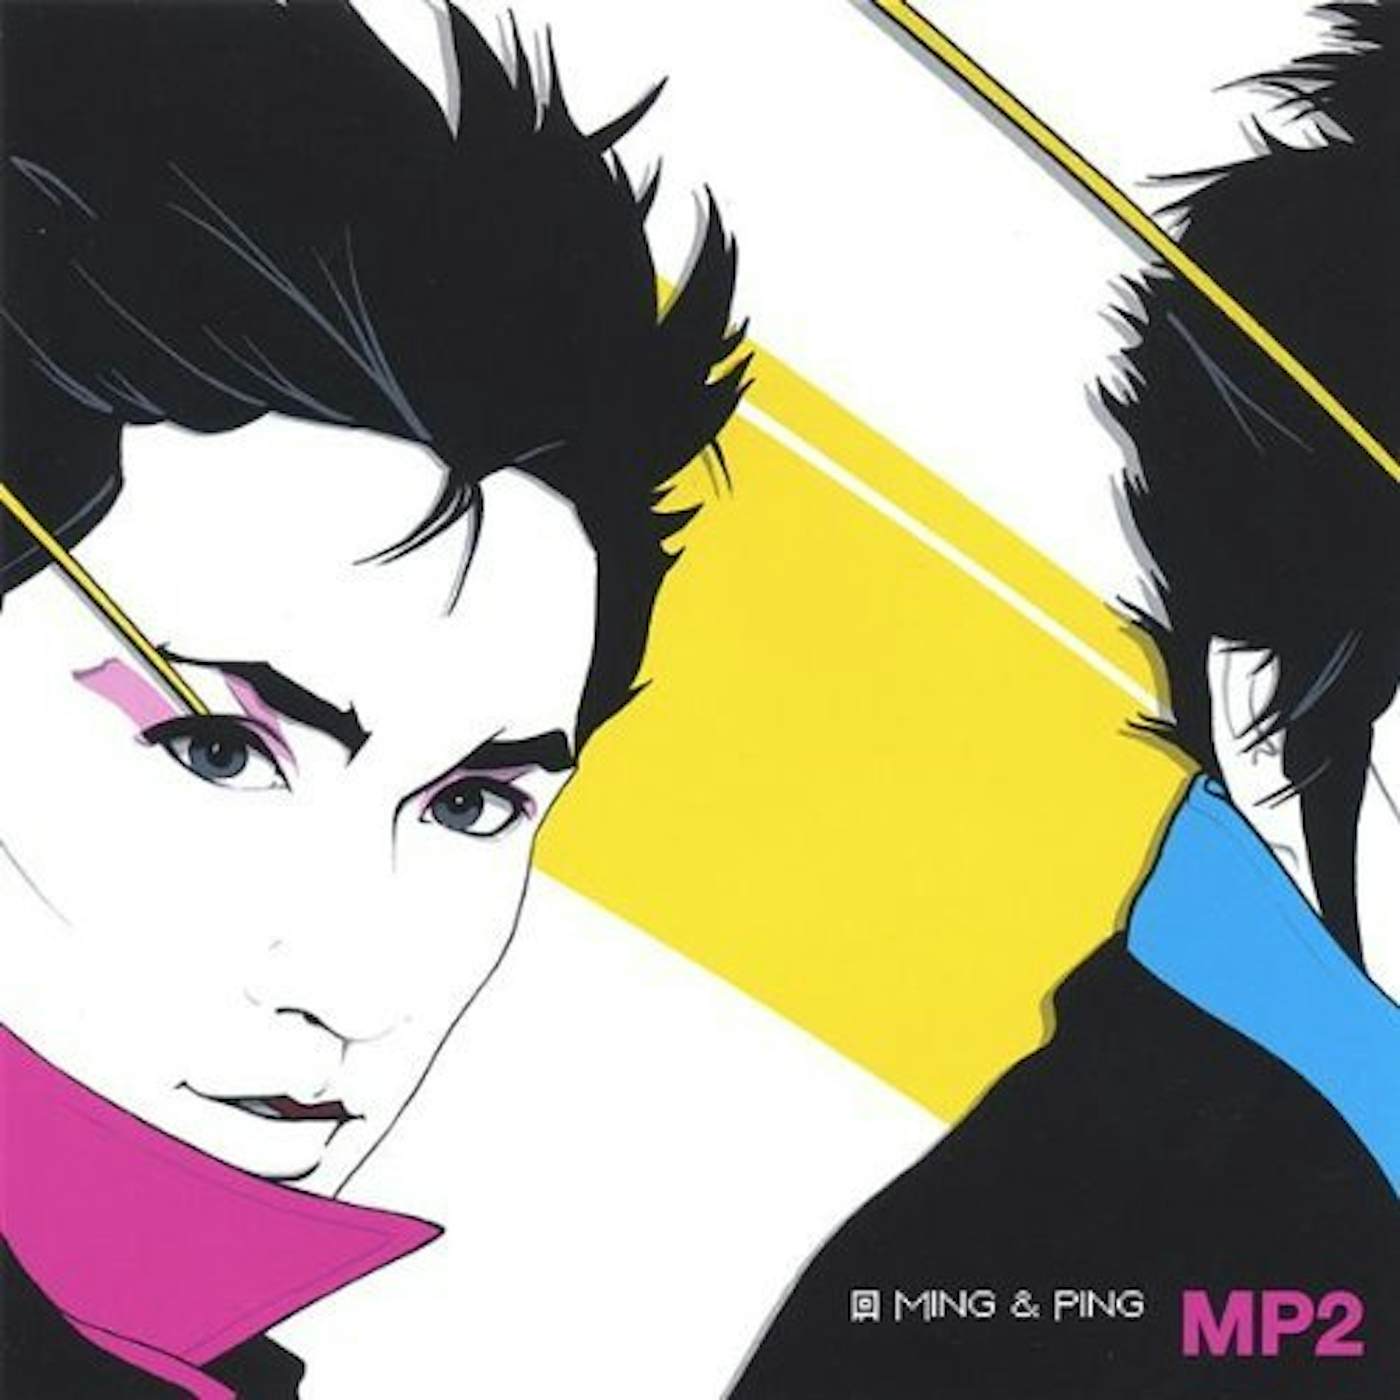 Ming & Ping MP2 CD